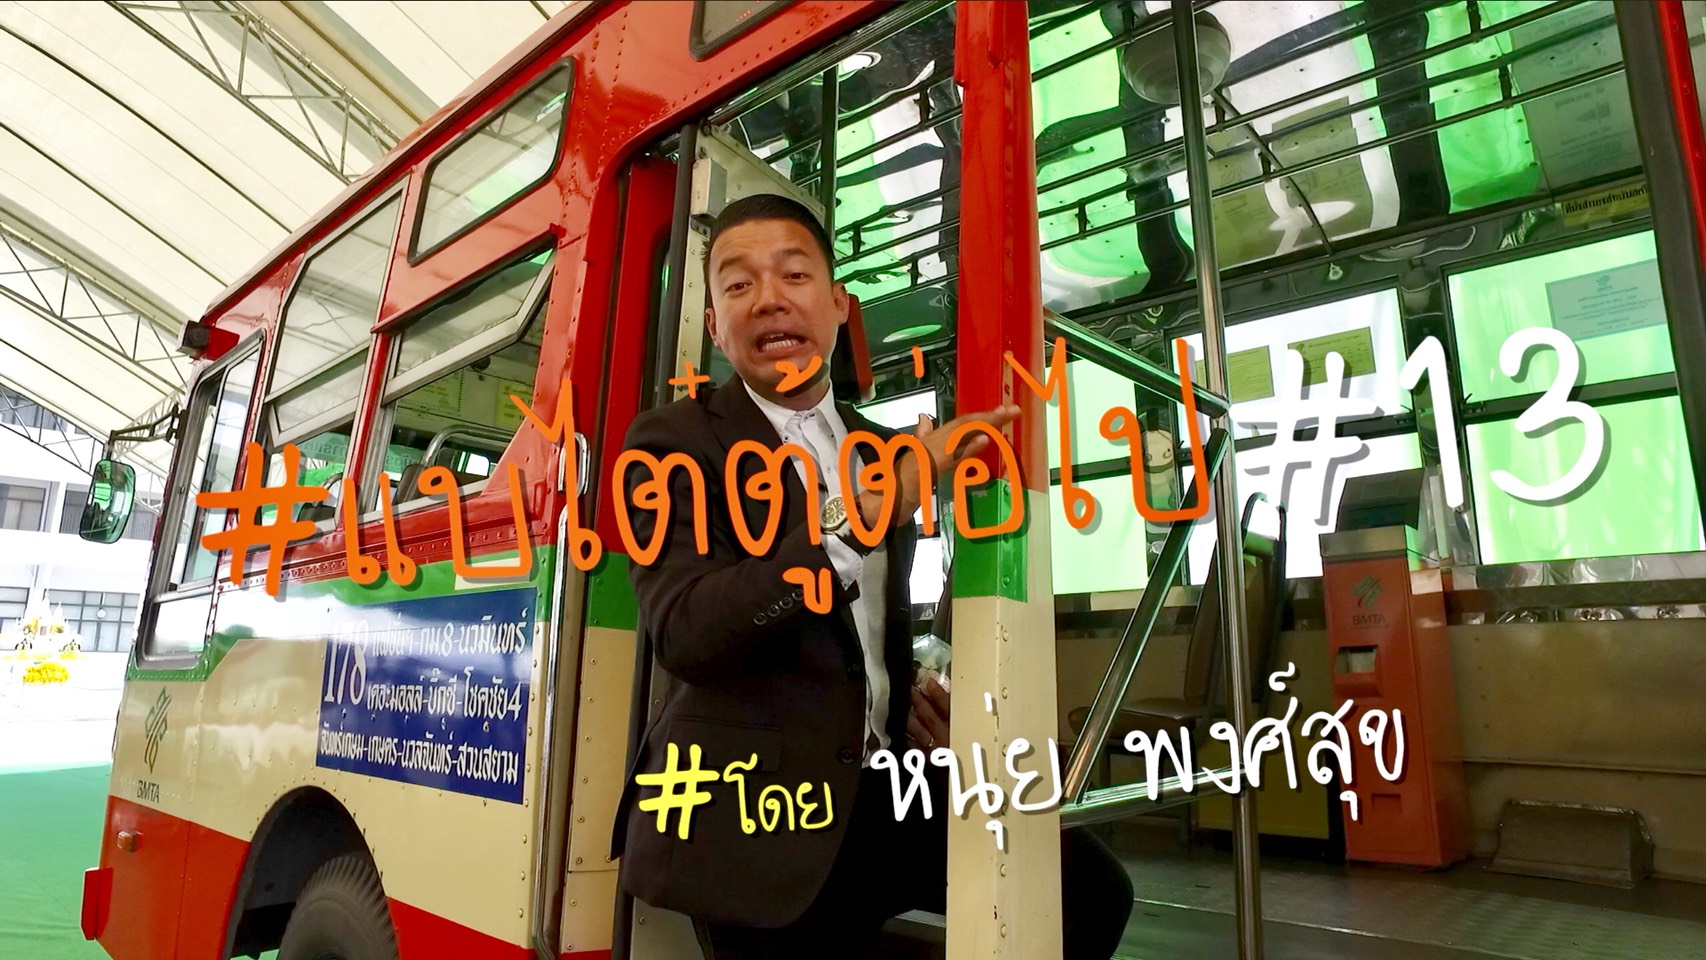 #แบไต๋ตู้ต่อไป #13 มาดูความพร้อมของรถเมล์ไทย กับระบบ Cash Box และ E-Ticket ที่กำลังจะเริ่มแล้ว!!!